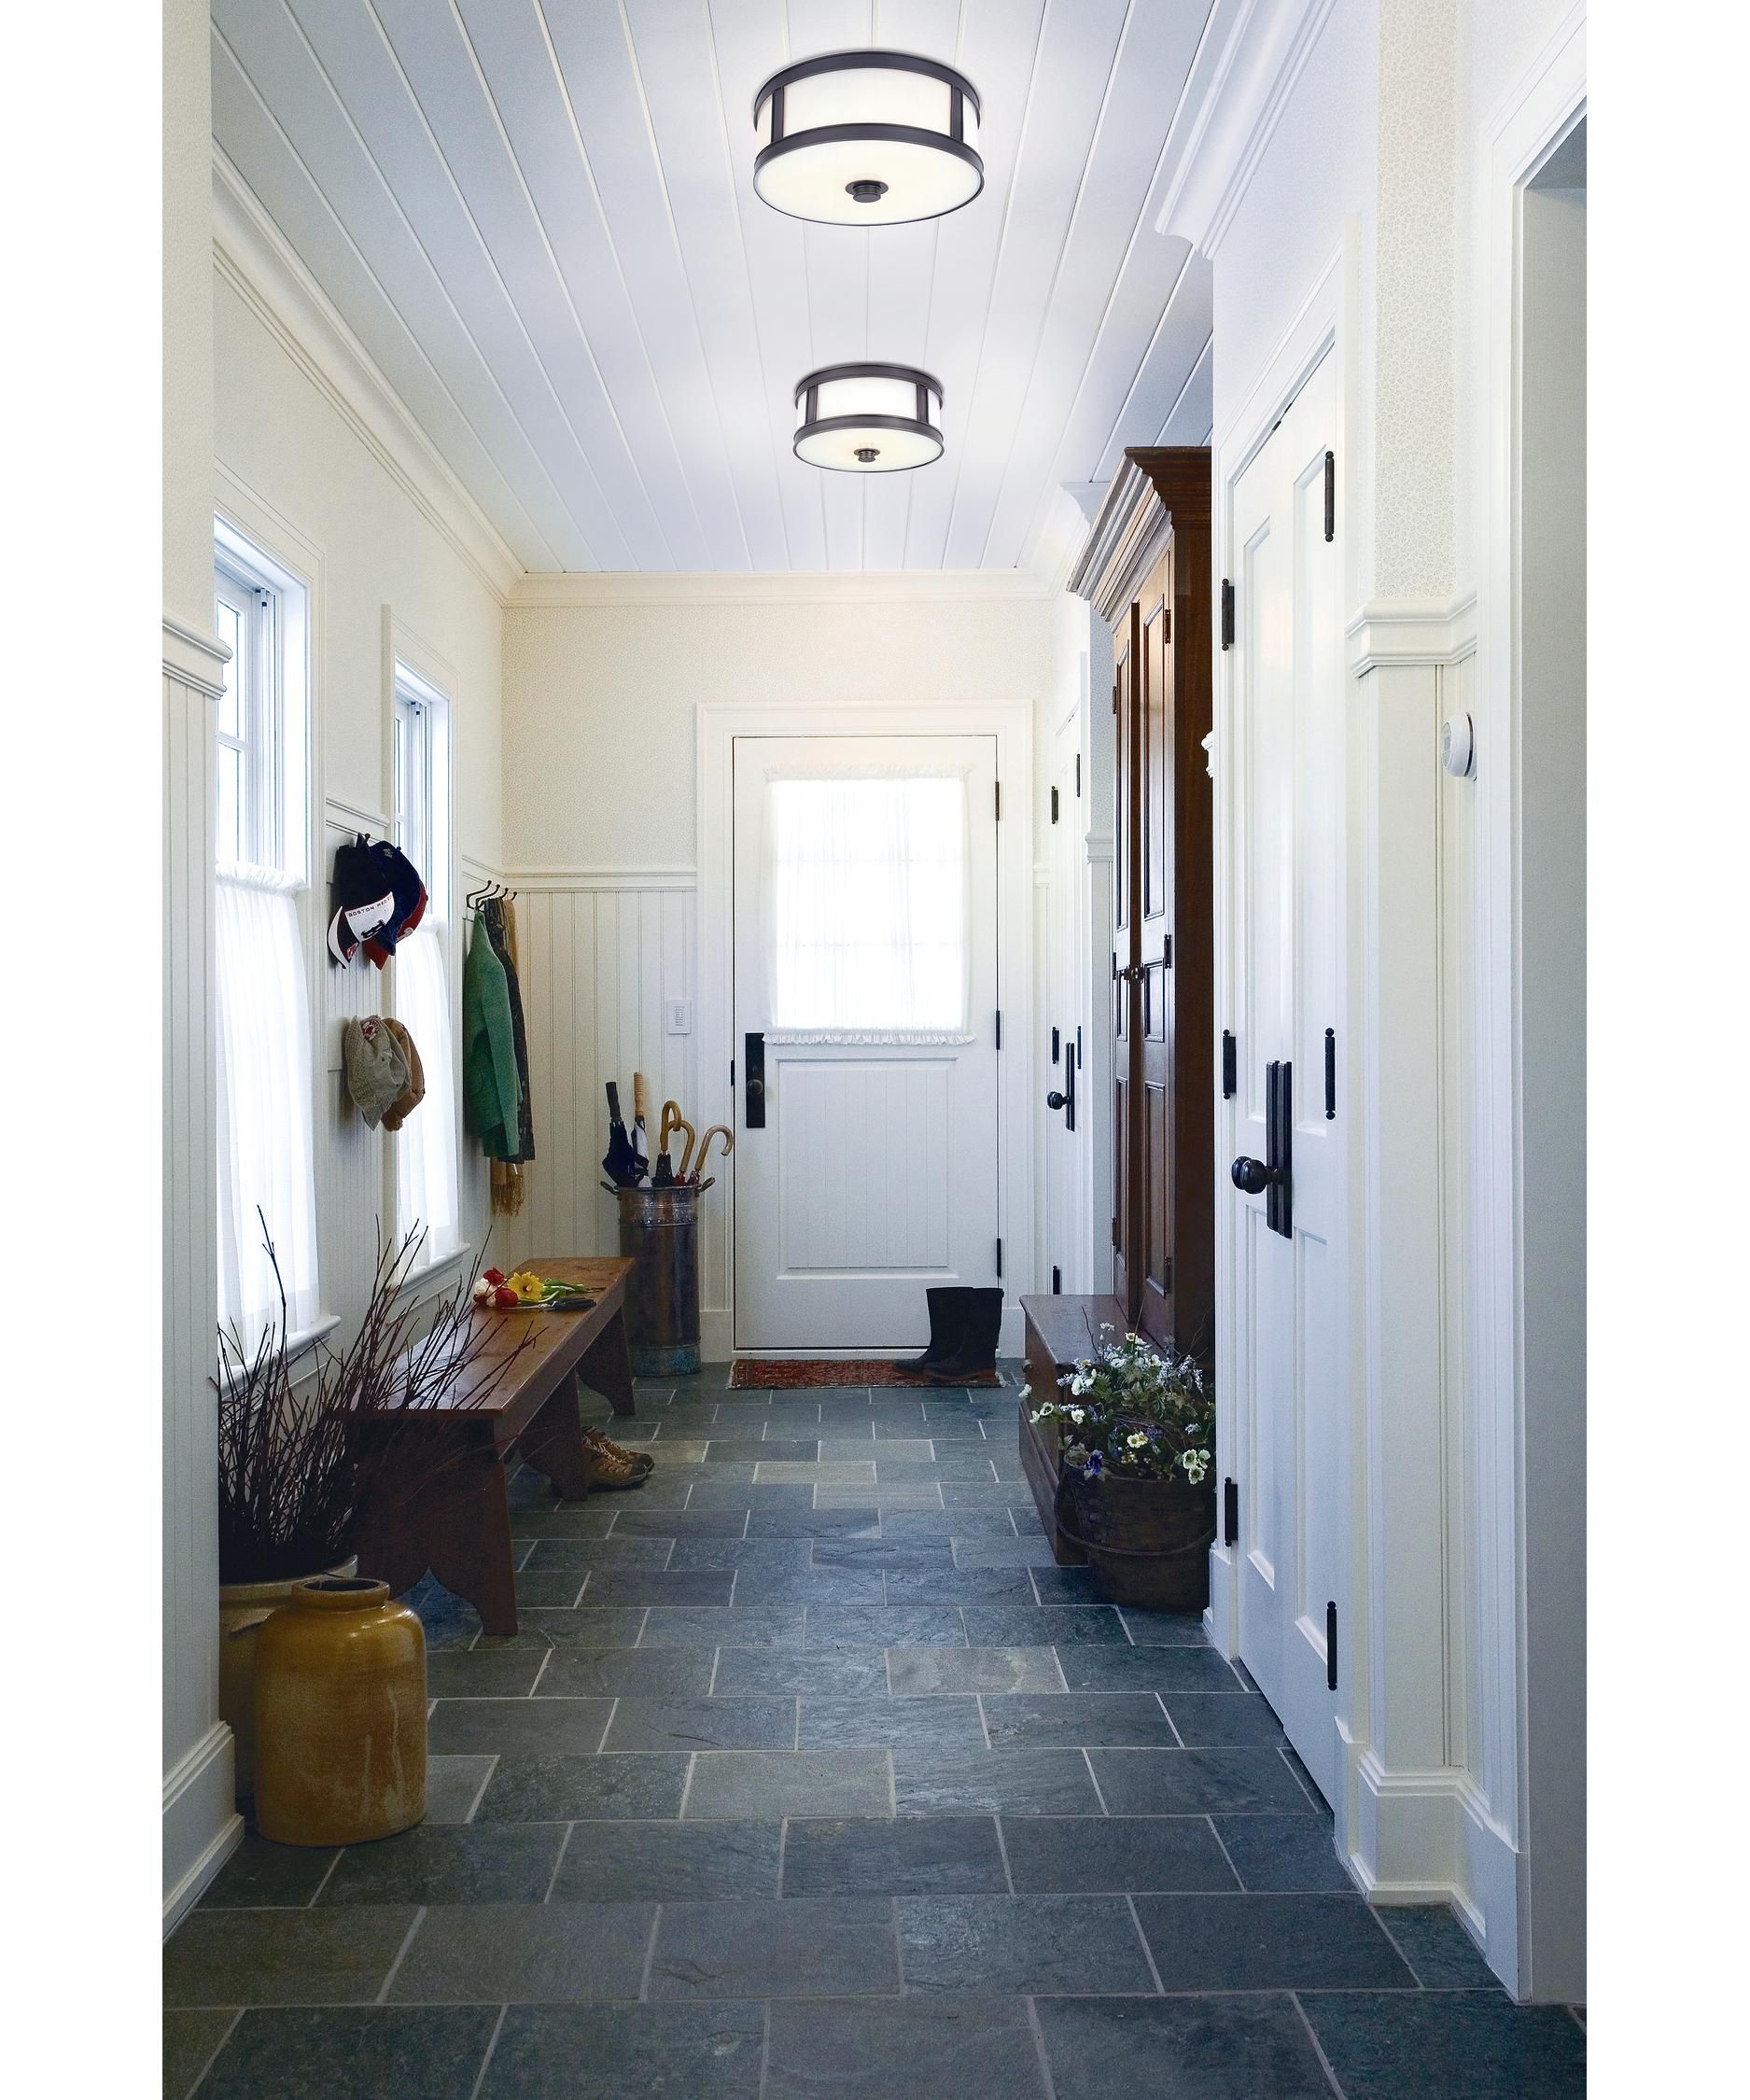 Фото коридор в доме: Прихожая в частном доме - фото оригинальных идей дизайна в прихожейДекор и дизайн интерьера